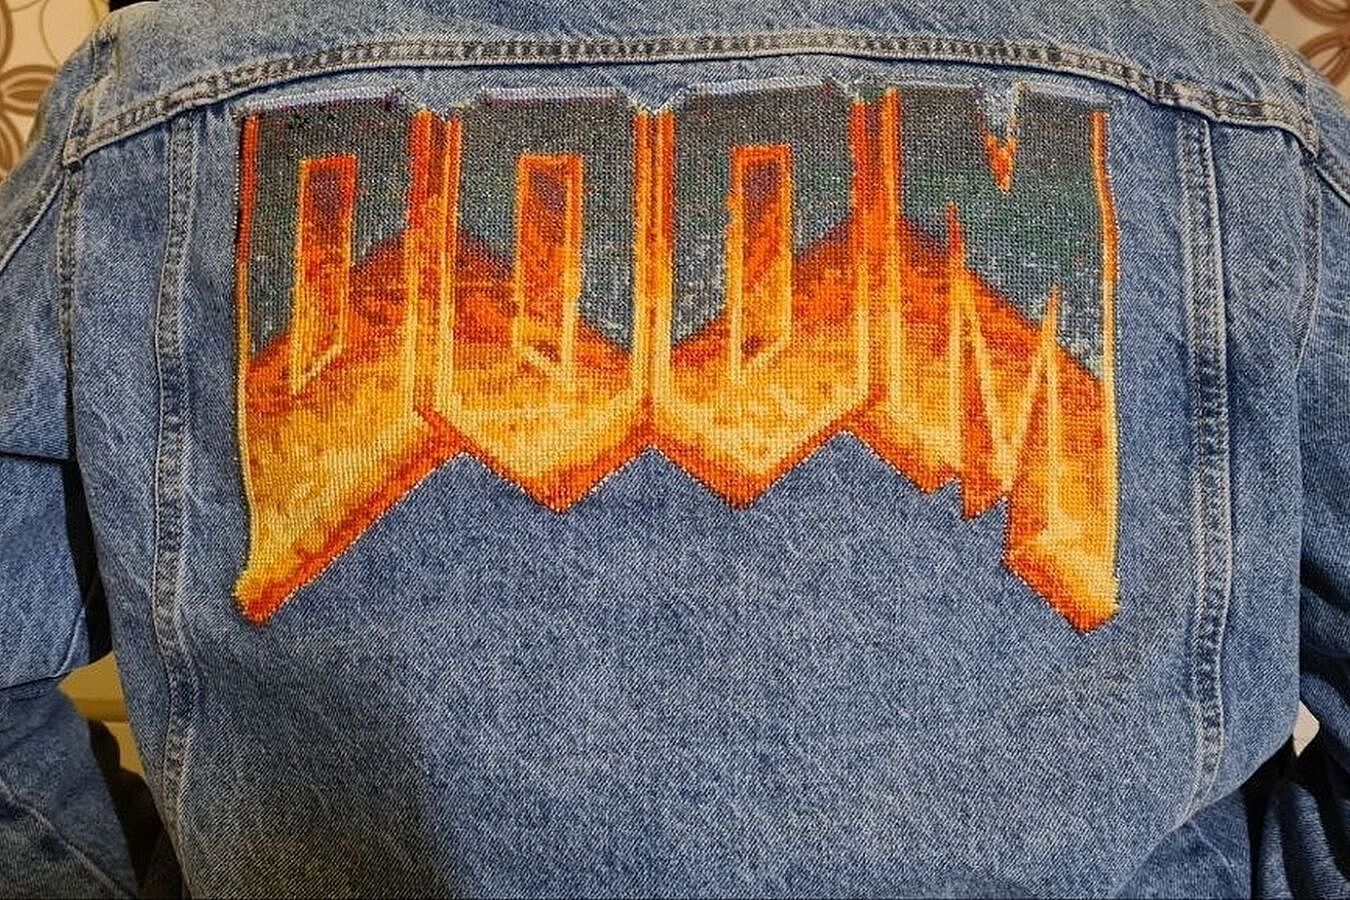 Жена вышила логотип культовой DOOM на джинсовке мужа